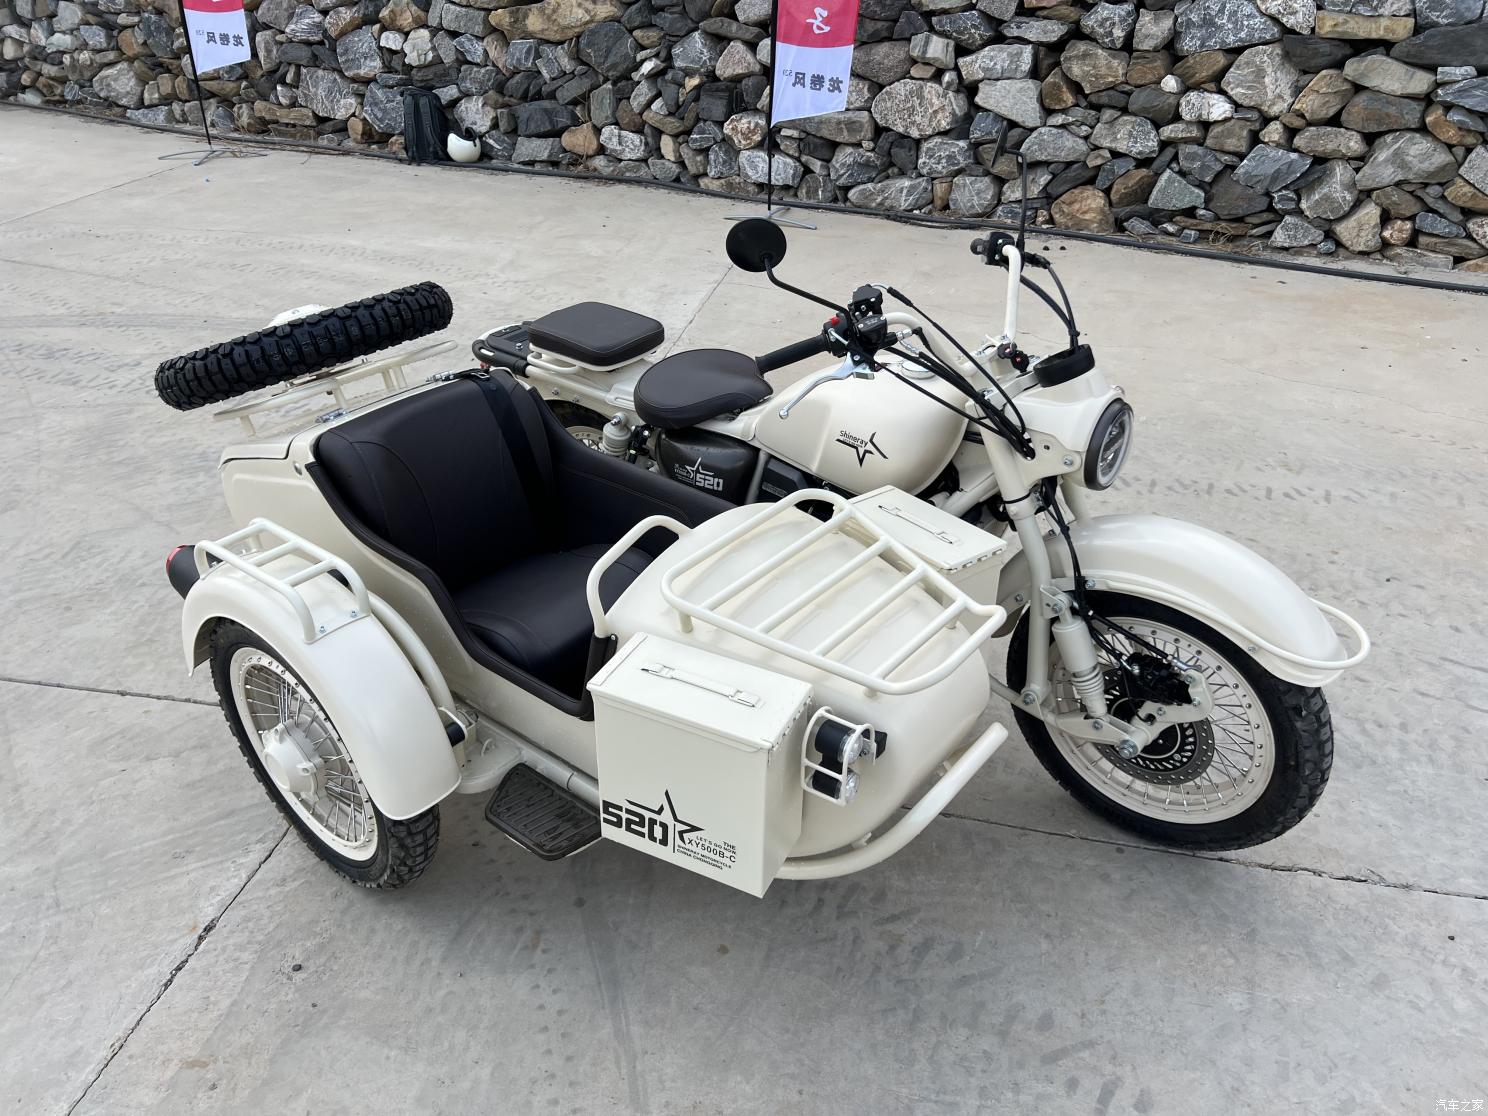 Китайцы скопировали российскую икону – мотоцикл «Урал» с коляской. Shineray Tornado получился функциональнее, мощнее, экономичнее и в разы дешевле